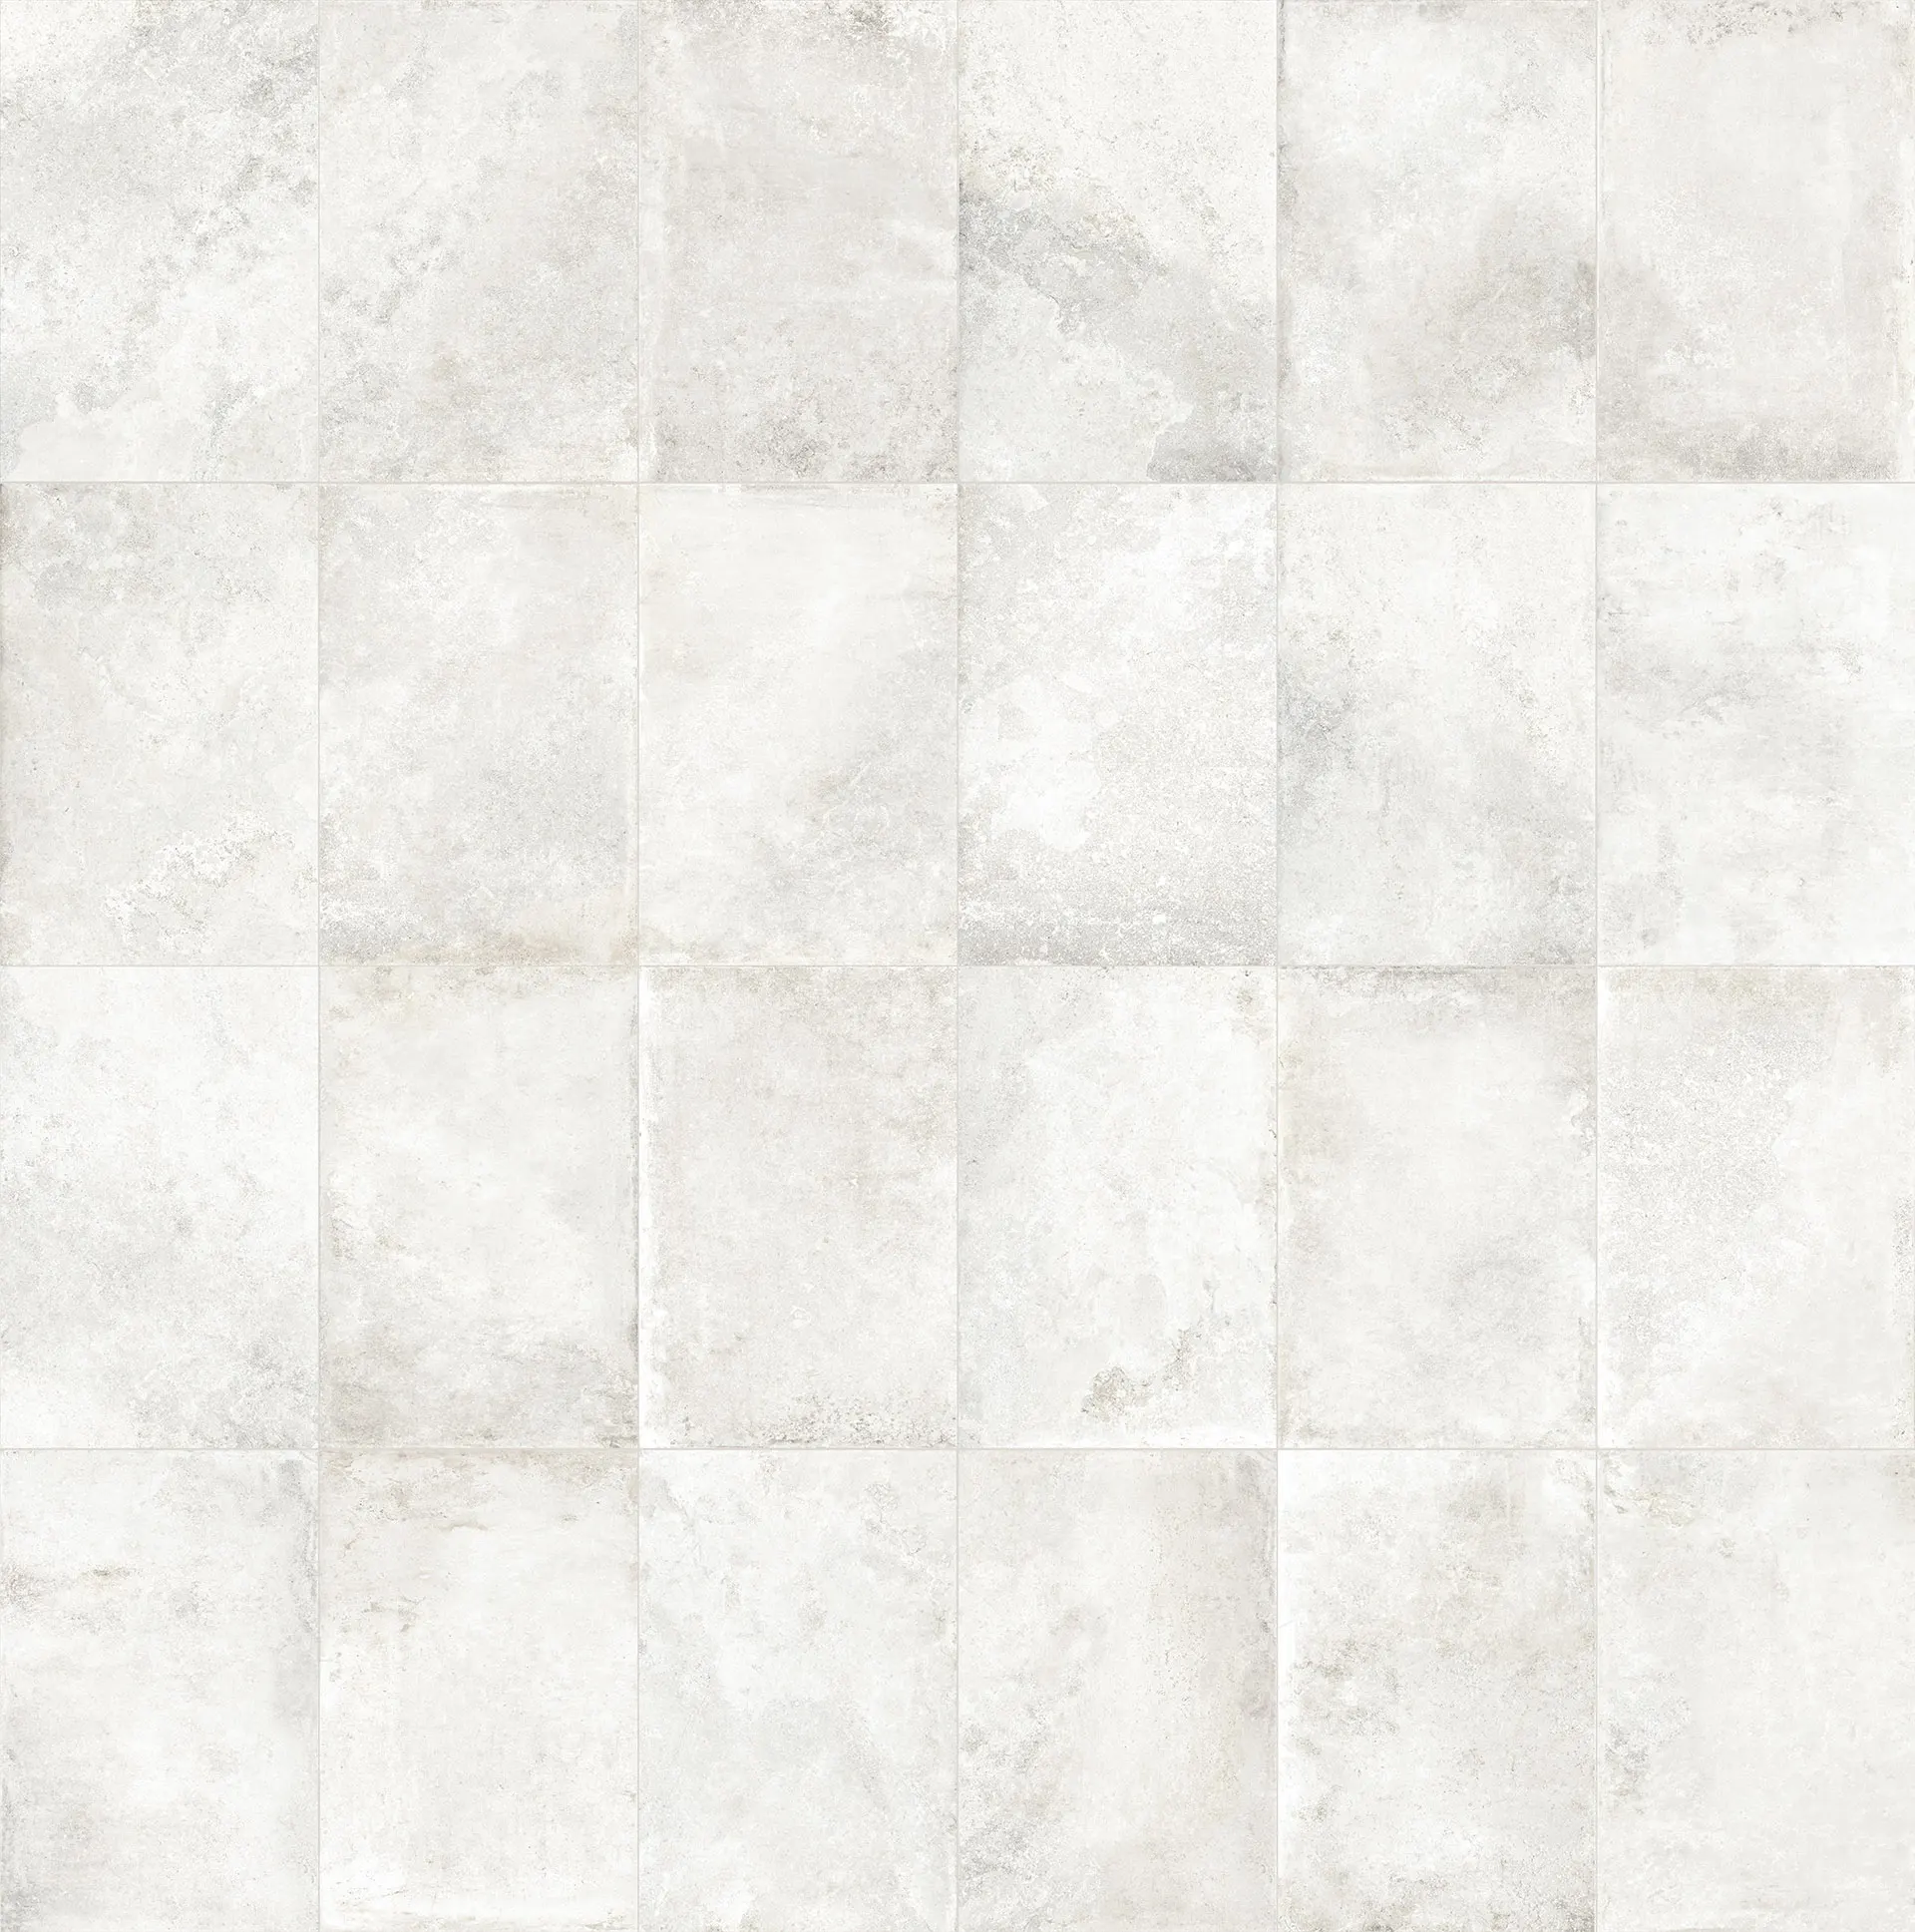 Stone-look porcelain tile exudes elegance in architectural design.